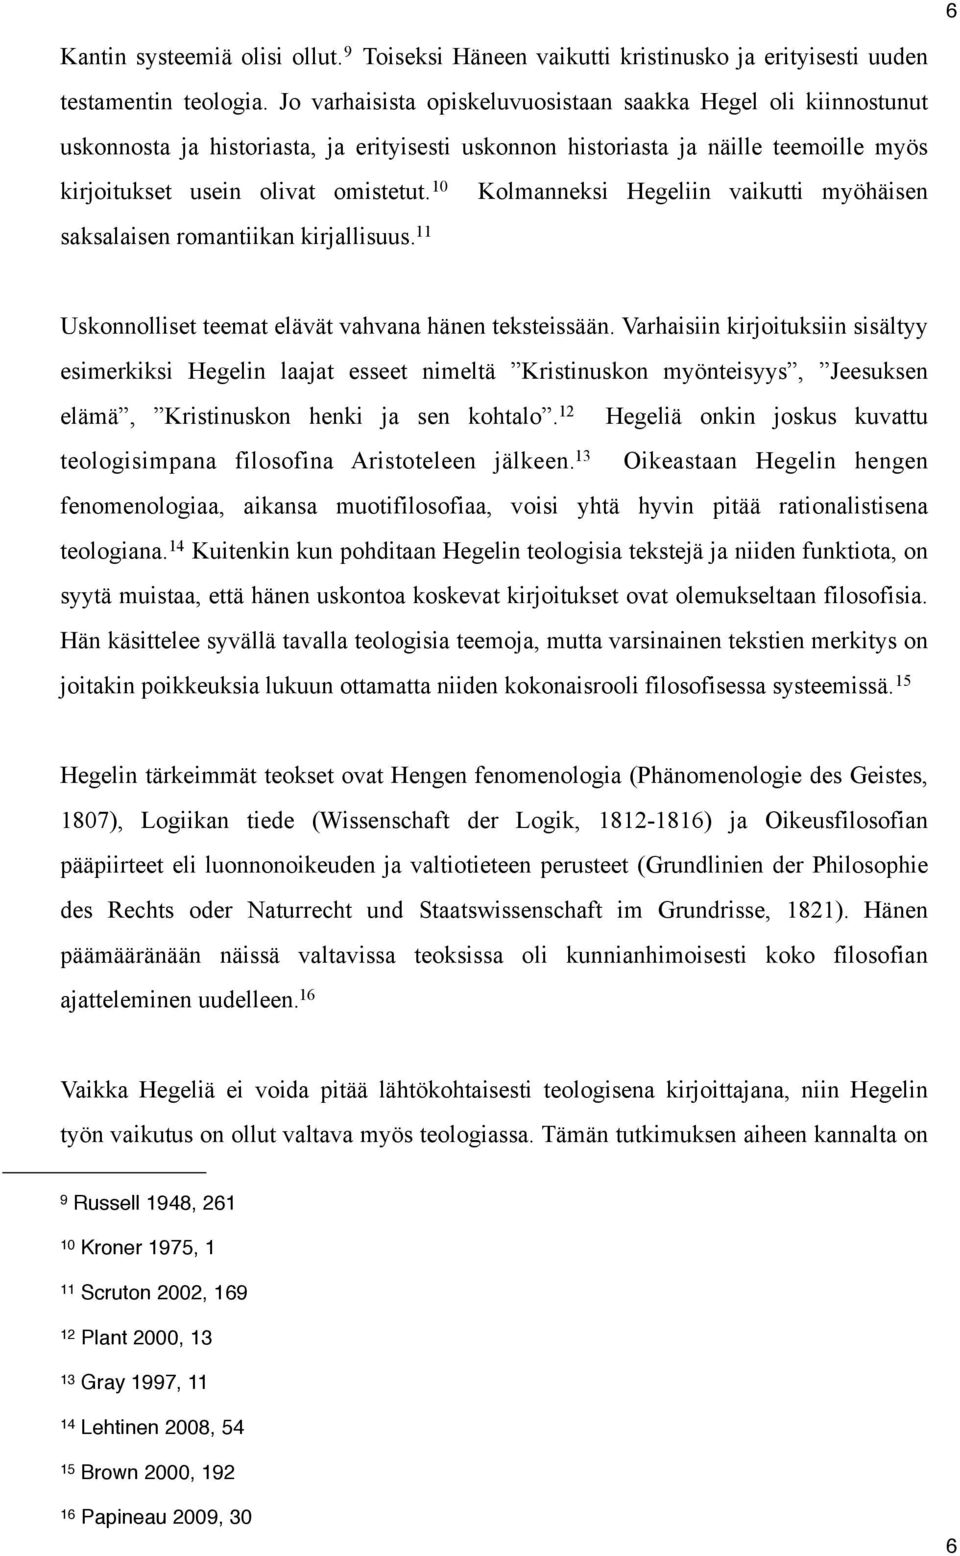 10 Kolmanneksi Hegeliin vaikutti myöhäisen saksalaisen romantiikan kirjallisuus. 11 Uskonnolliset teemat elävät vahvana hänen teksteissään.